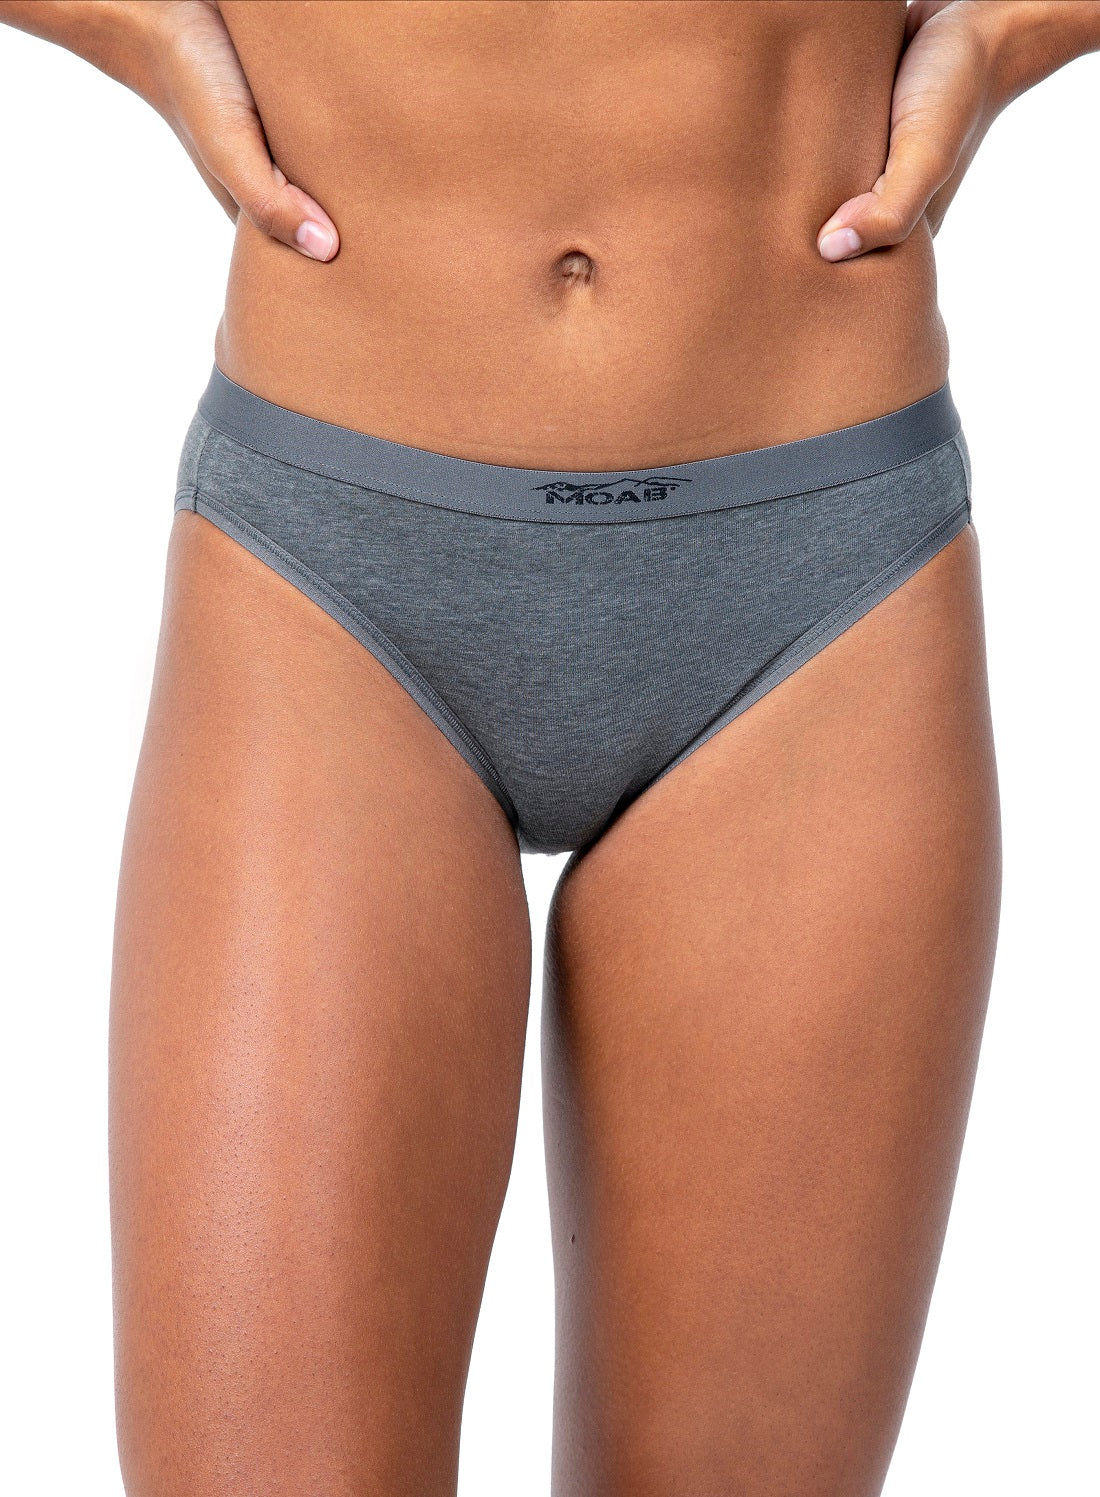 Calvin Klein Girls Underwear Cotton Hipster Panties, Kenya